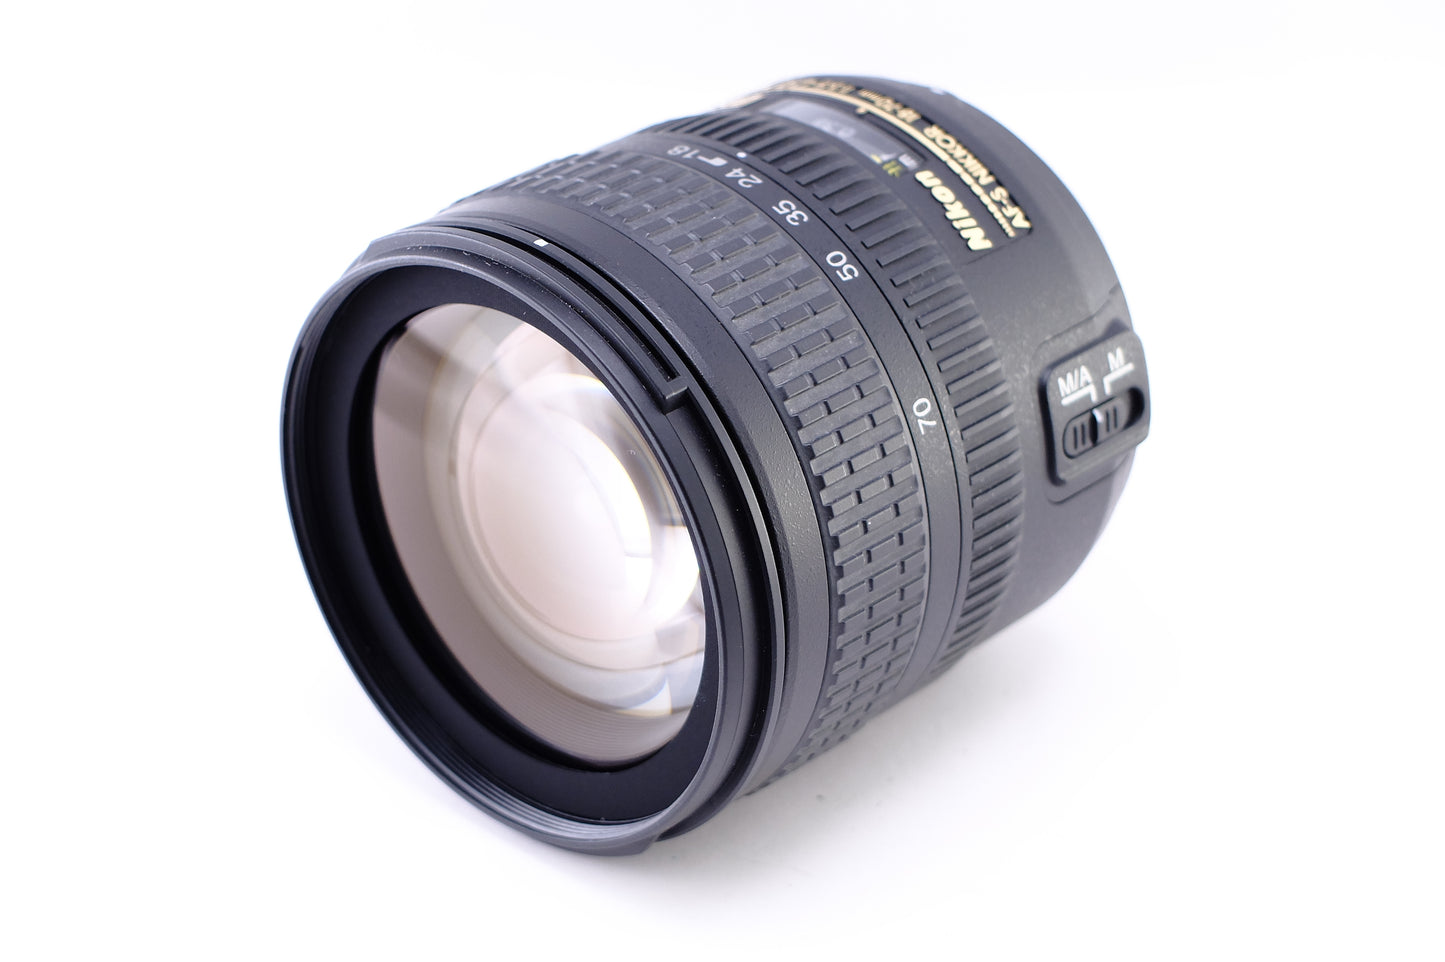 Nikon D80 + DX AF-S NIKKOR 18-70mm F3.5-4.5G ED [1038690248982]